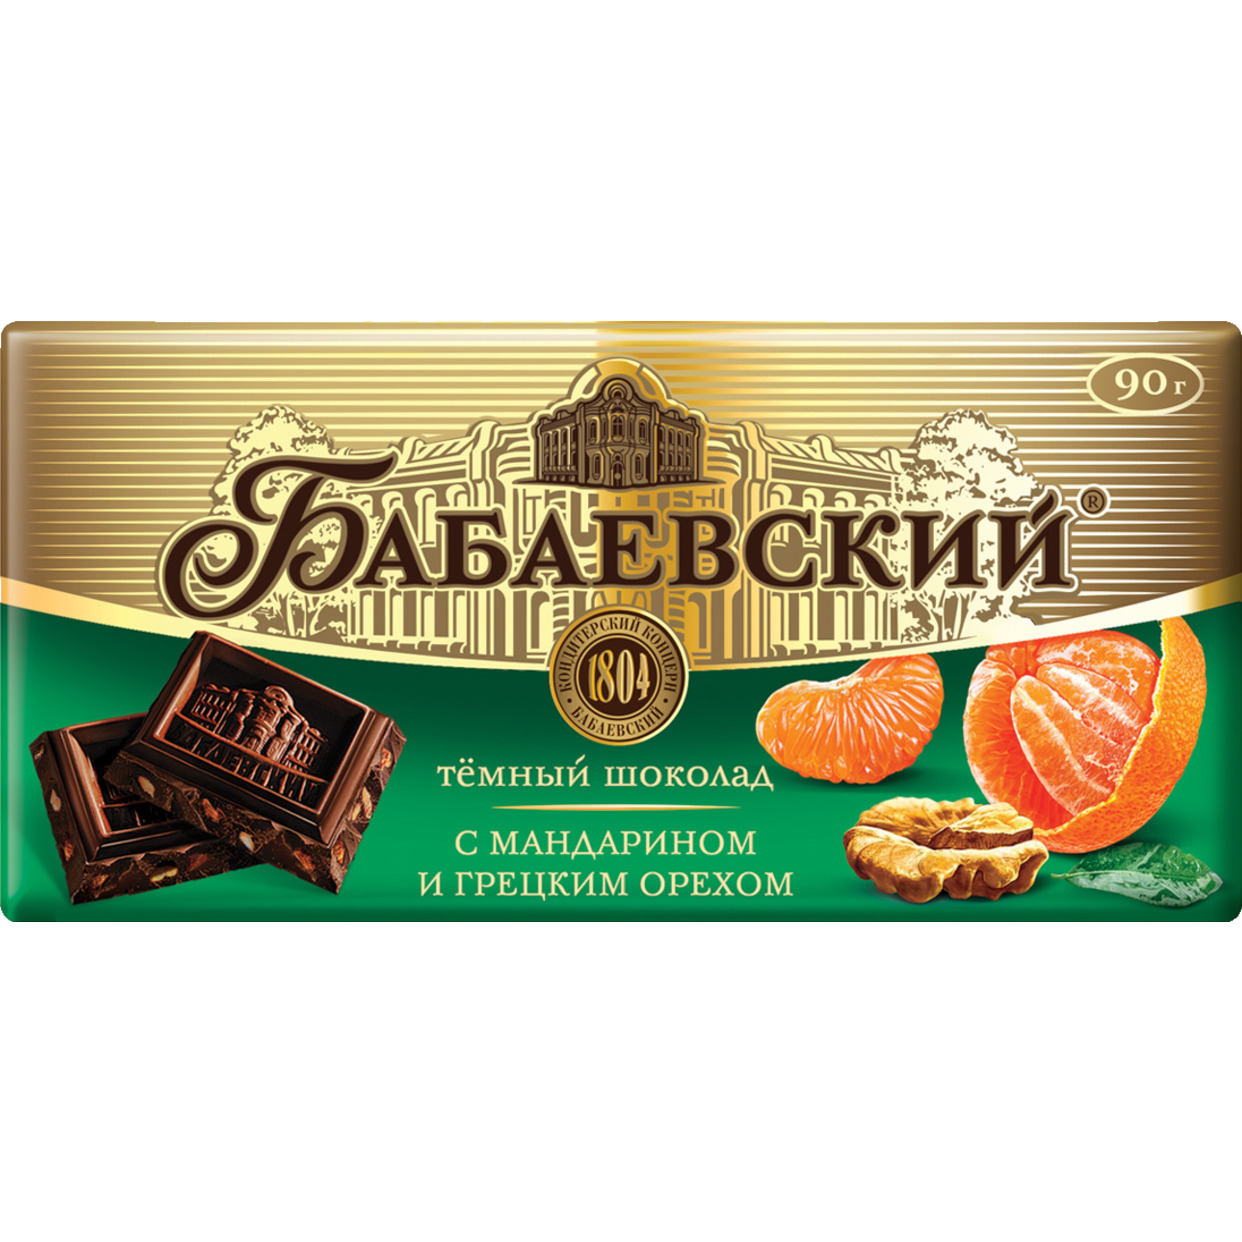 Шоколад Бабаевский с мандарином и грецким орехом, 90 г по акции в Пятерочке